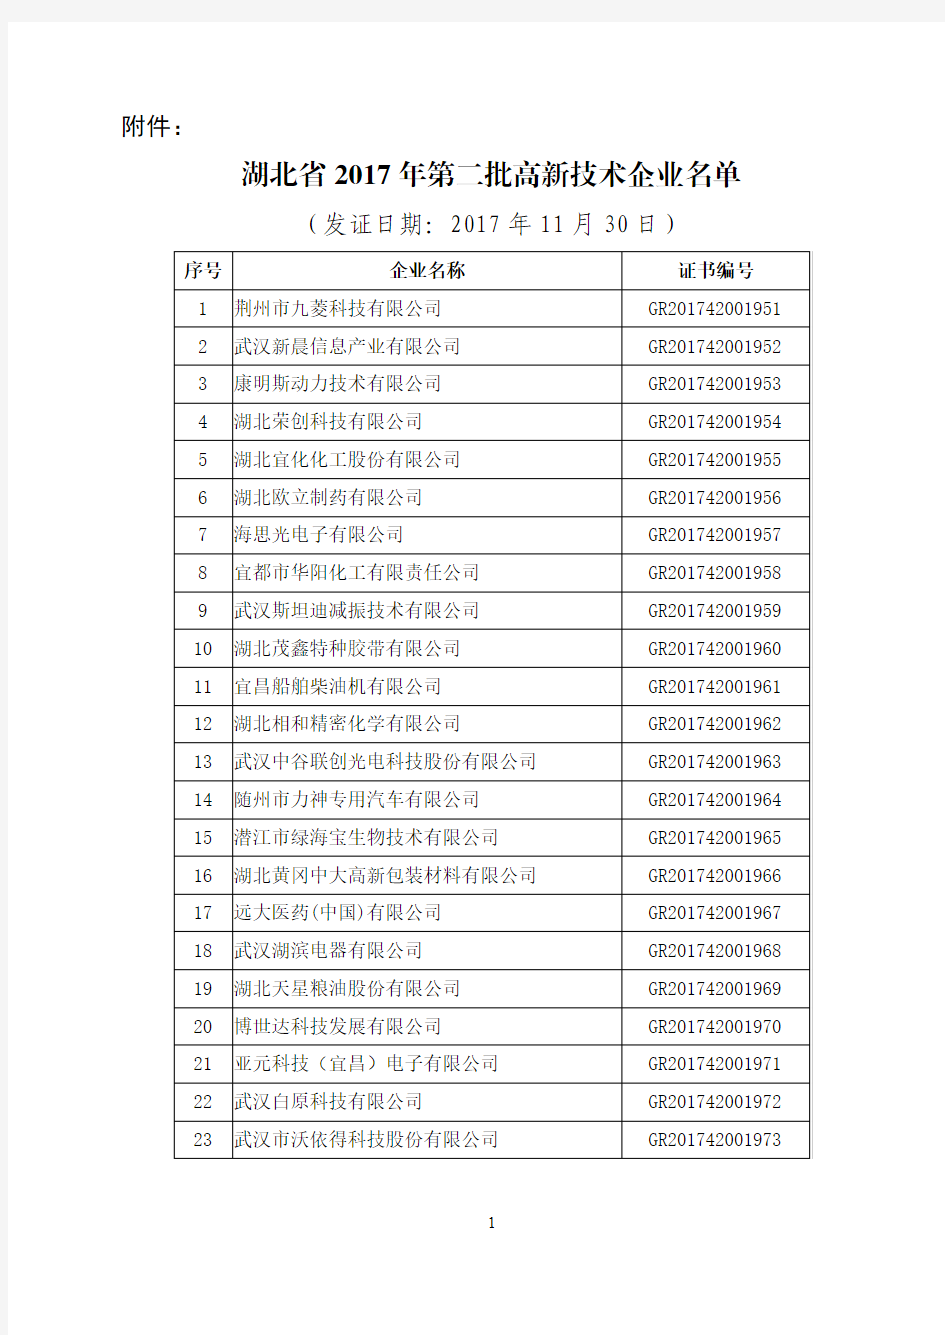 湖北省2017年第二批高新技术企业名单